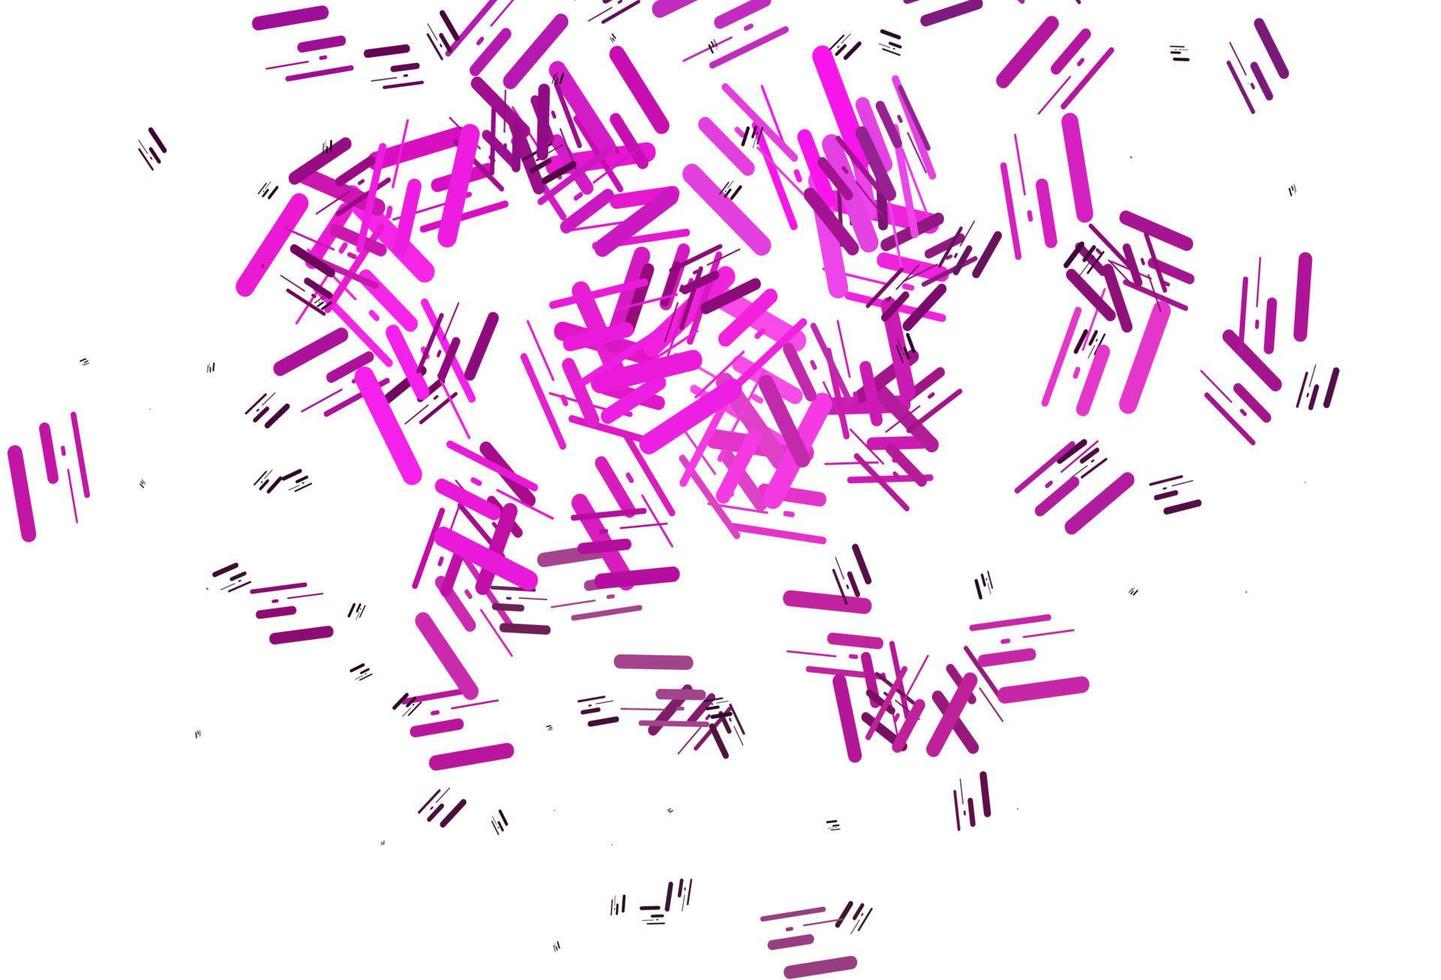 Telón de fondo de vector rosa claro con líneas largas.